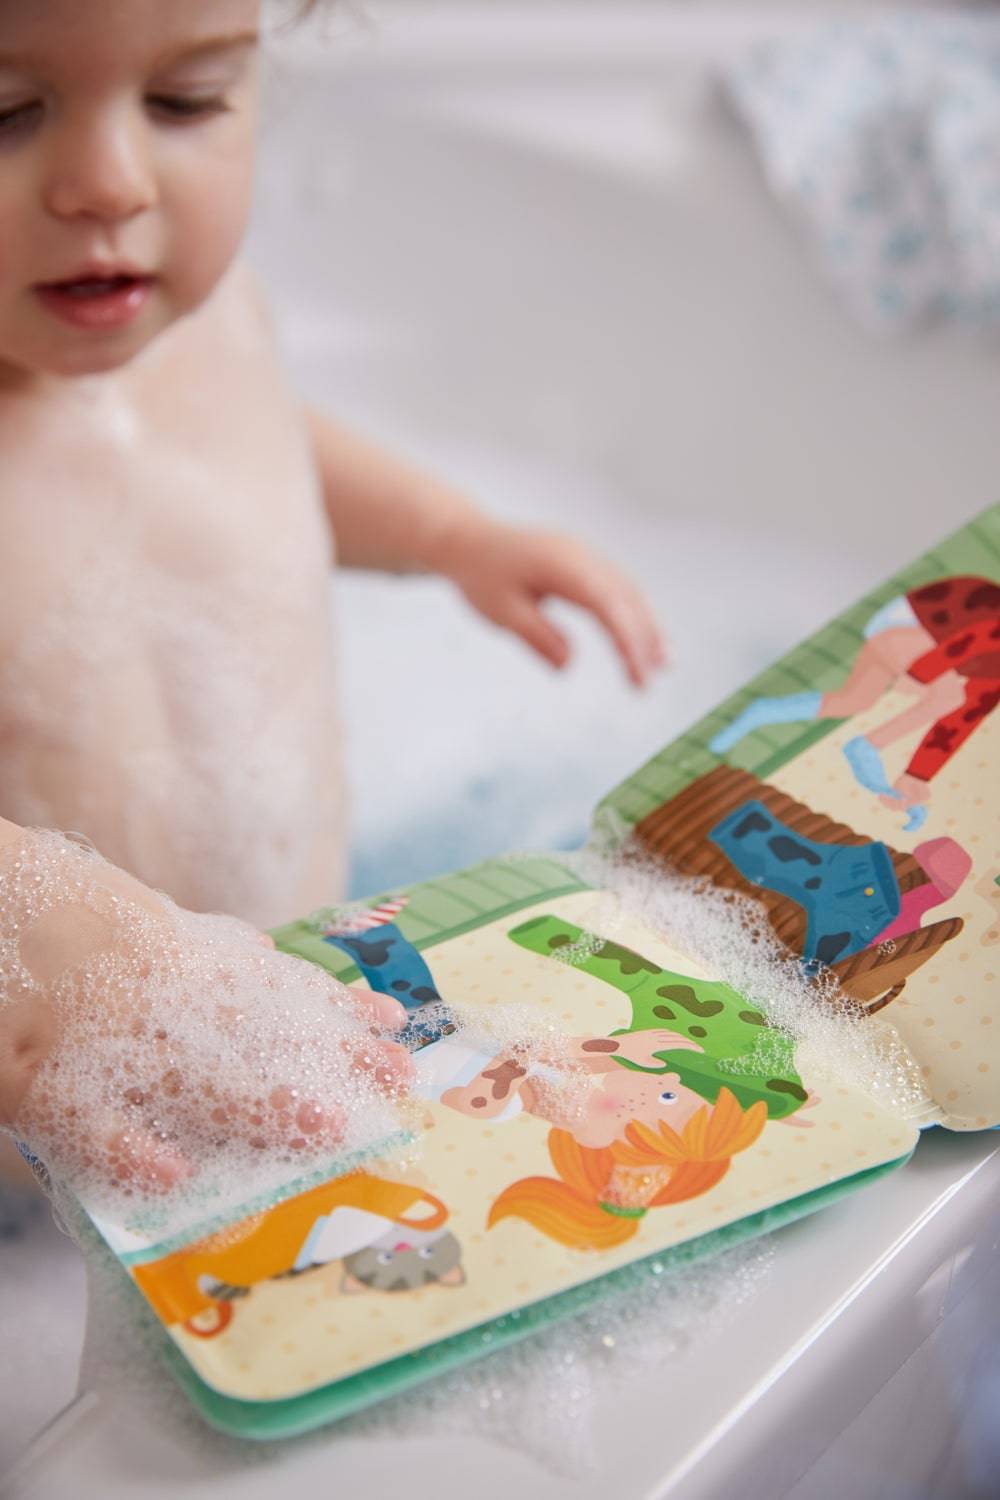 Paul & Pia Wash Day Bath Book - A Child's Delight